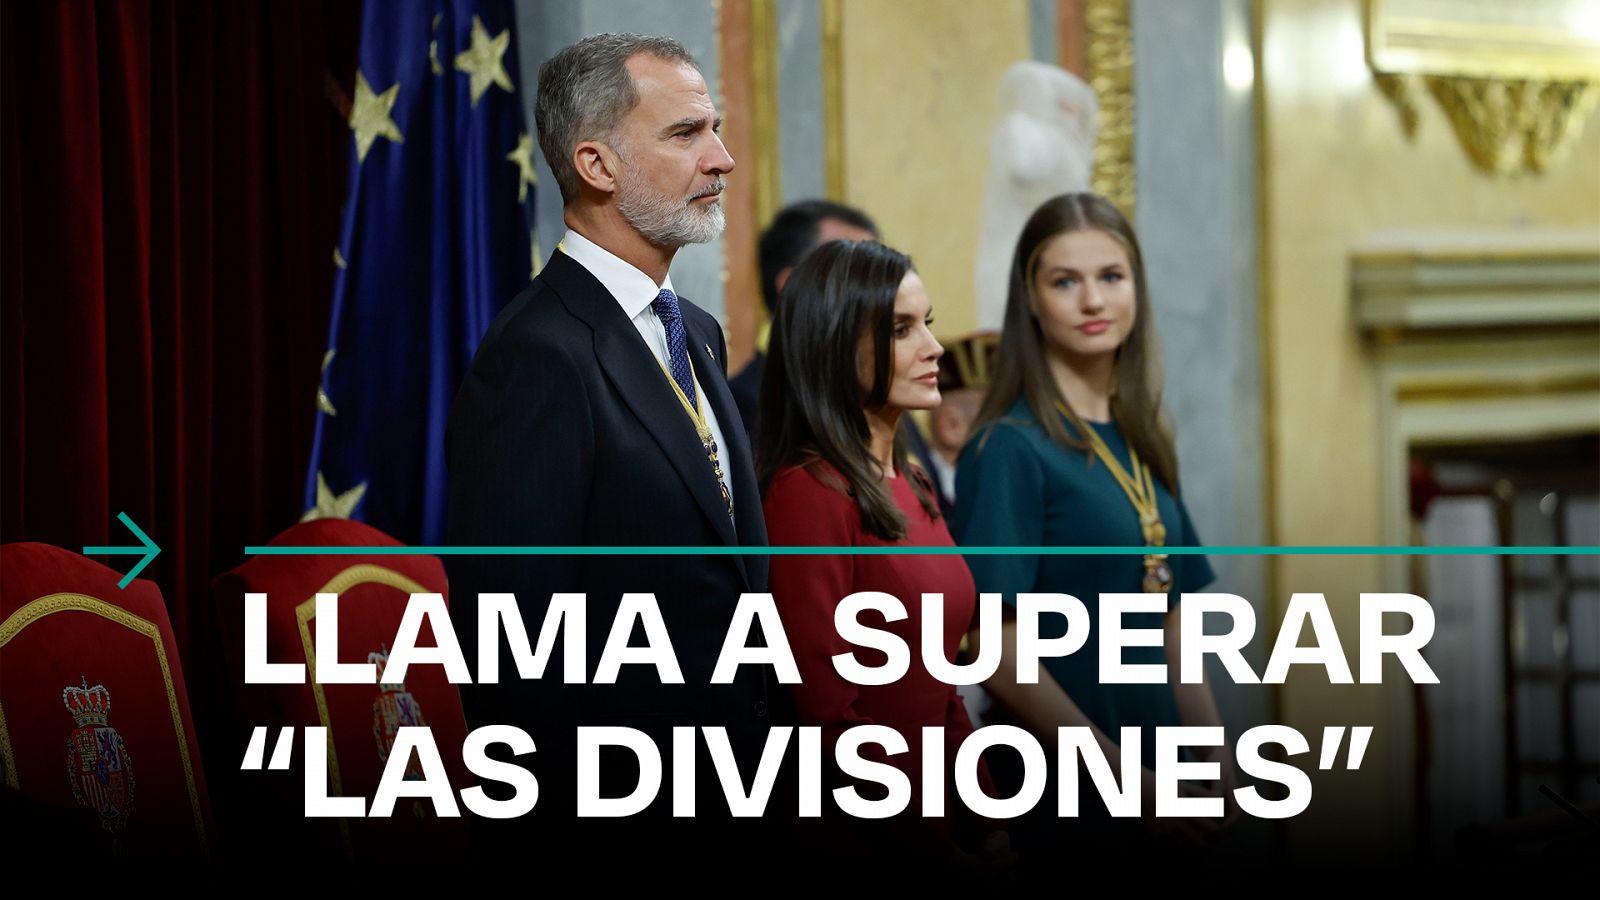 Apertura Legislatura: El rey Felipe VI definde la constitución y una España "sólida y unida"